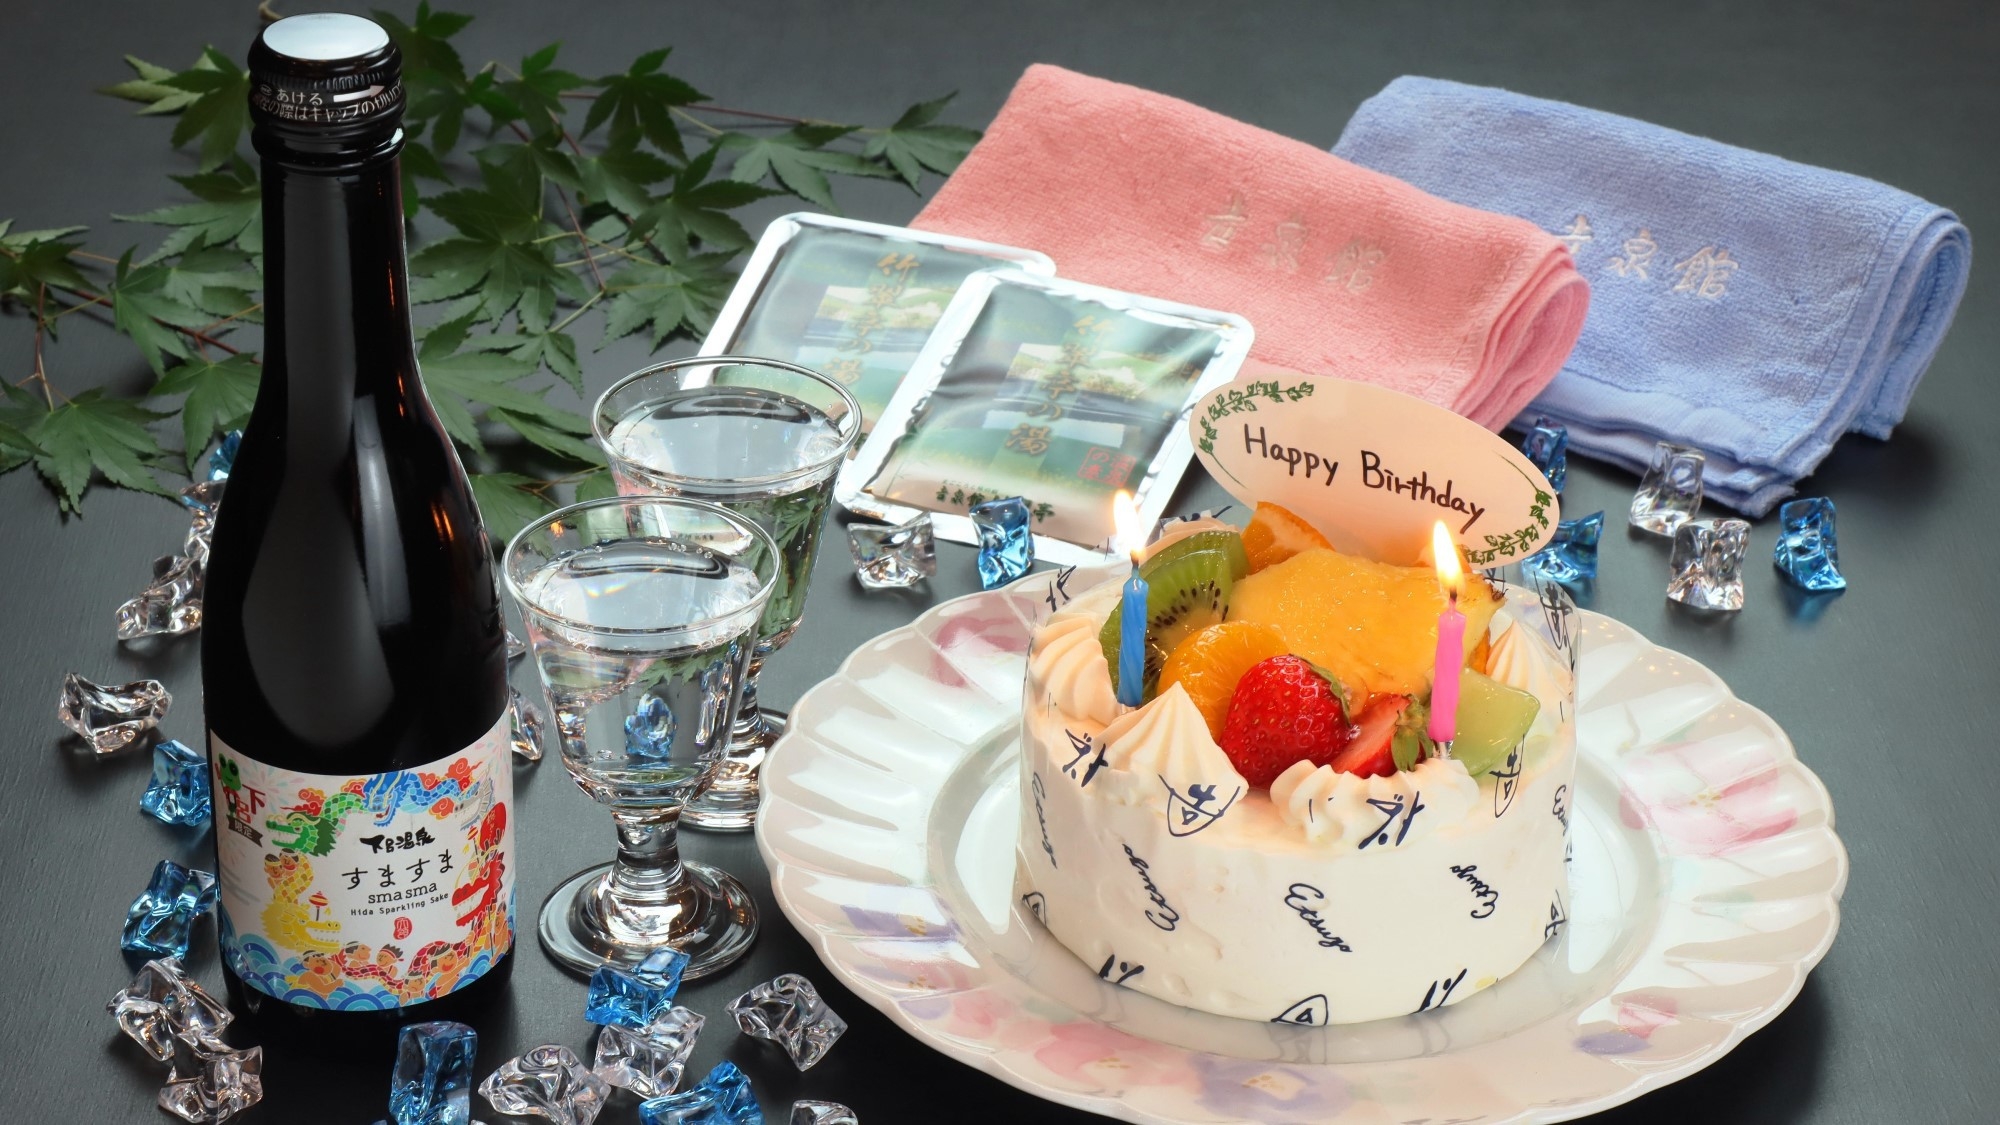 ■アニバーサリーケーキ+特典付■〜記念日のお祝いに-松-A5飛騨牛朴葉味噌焼き会席の記念日プラン